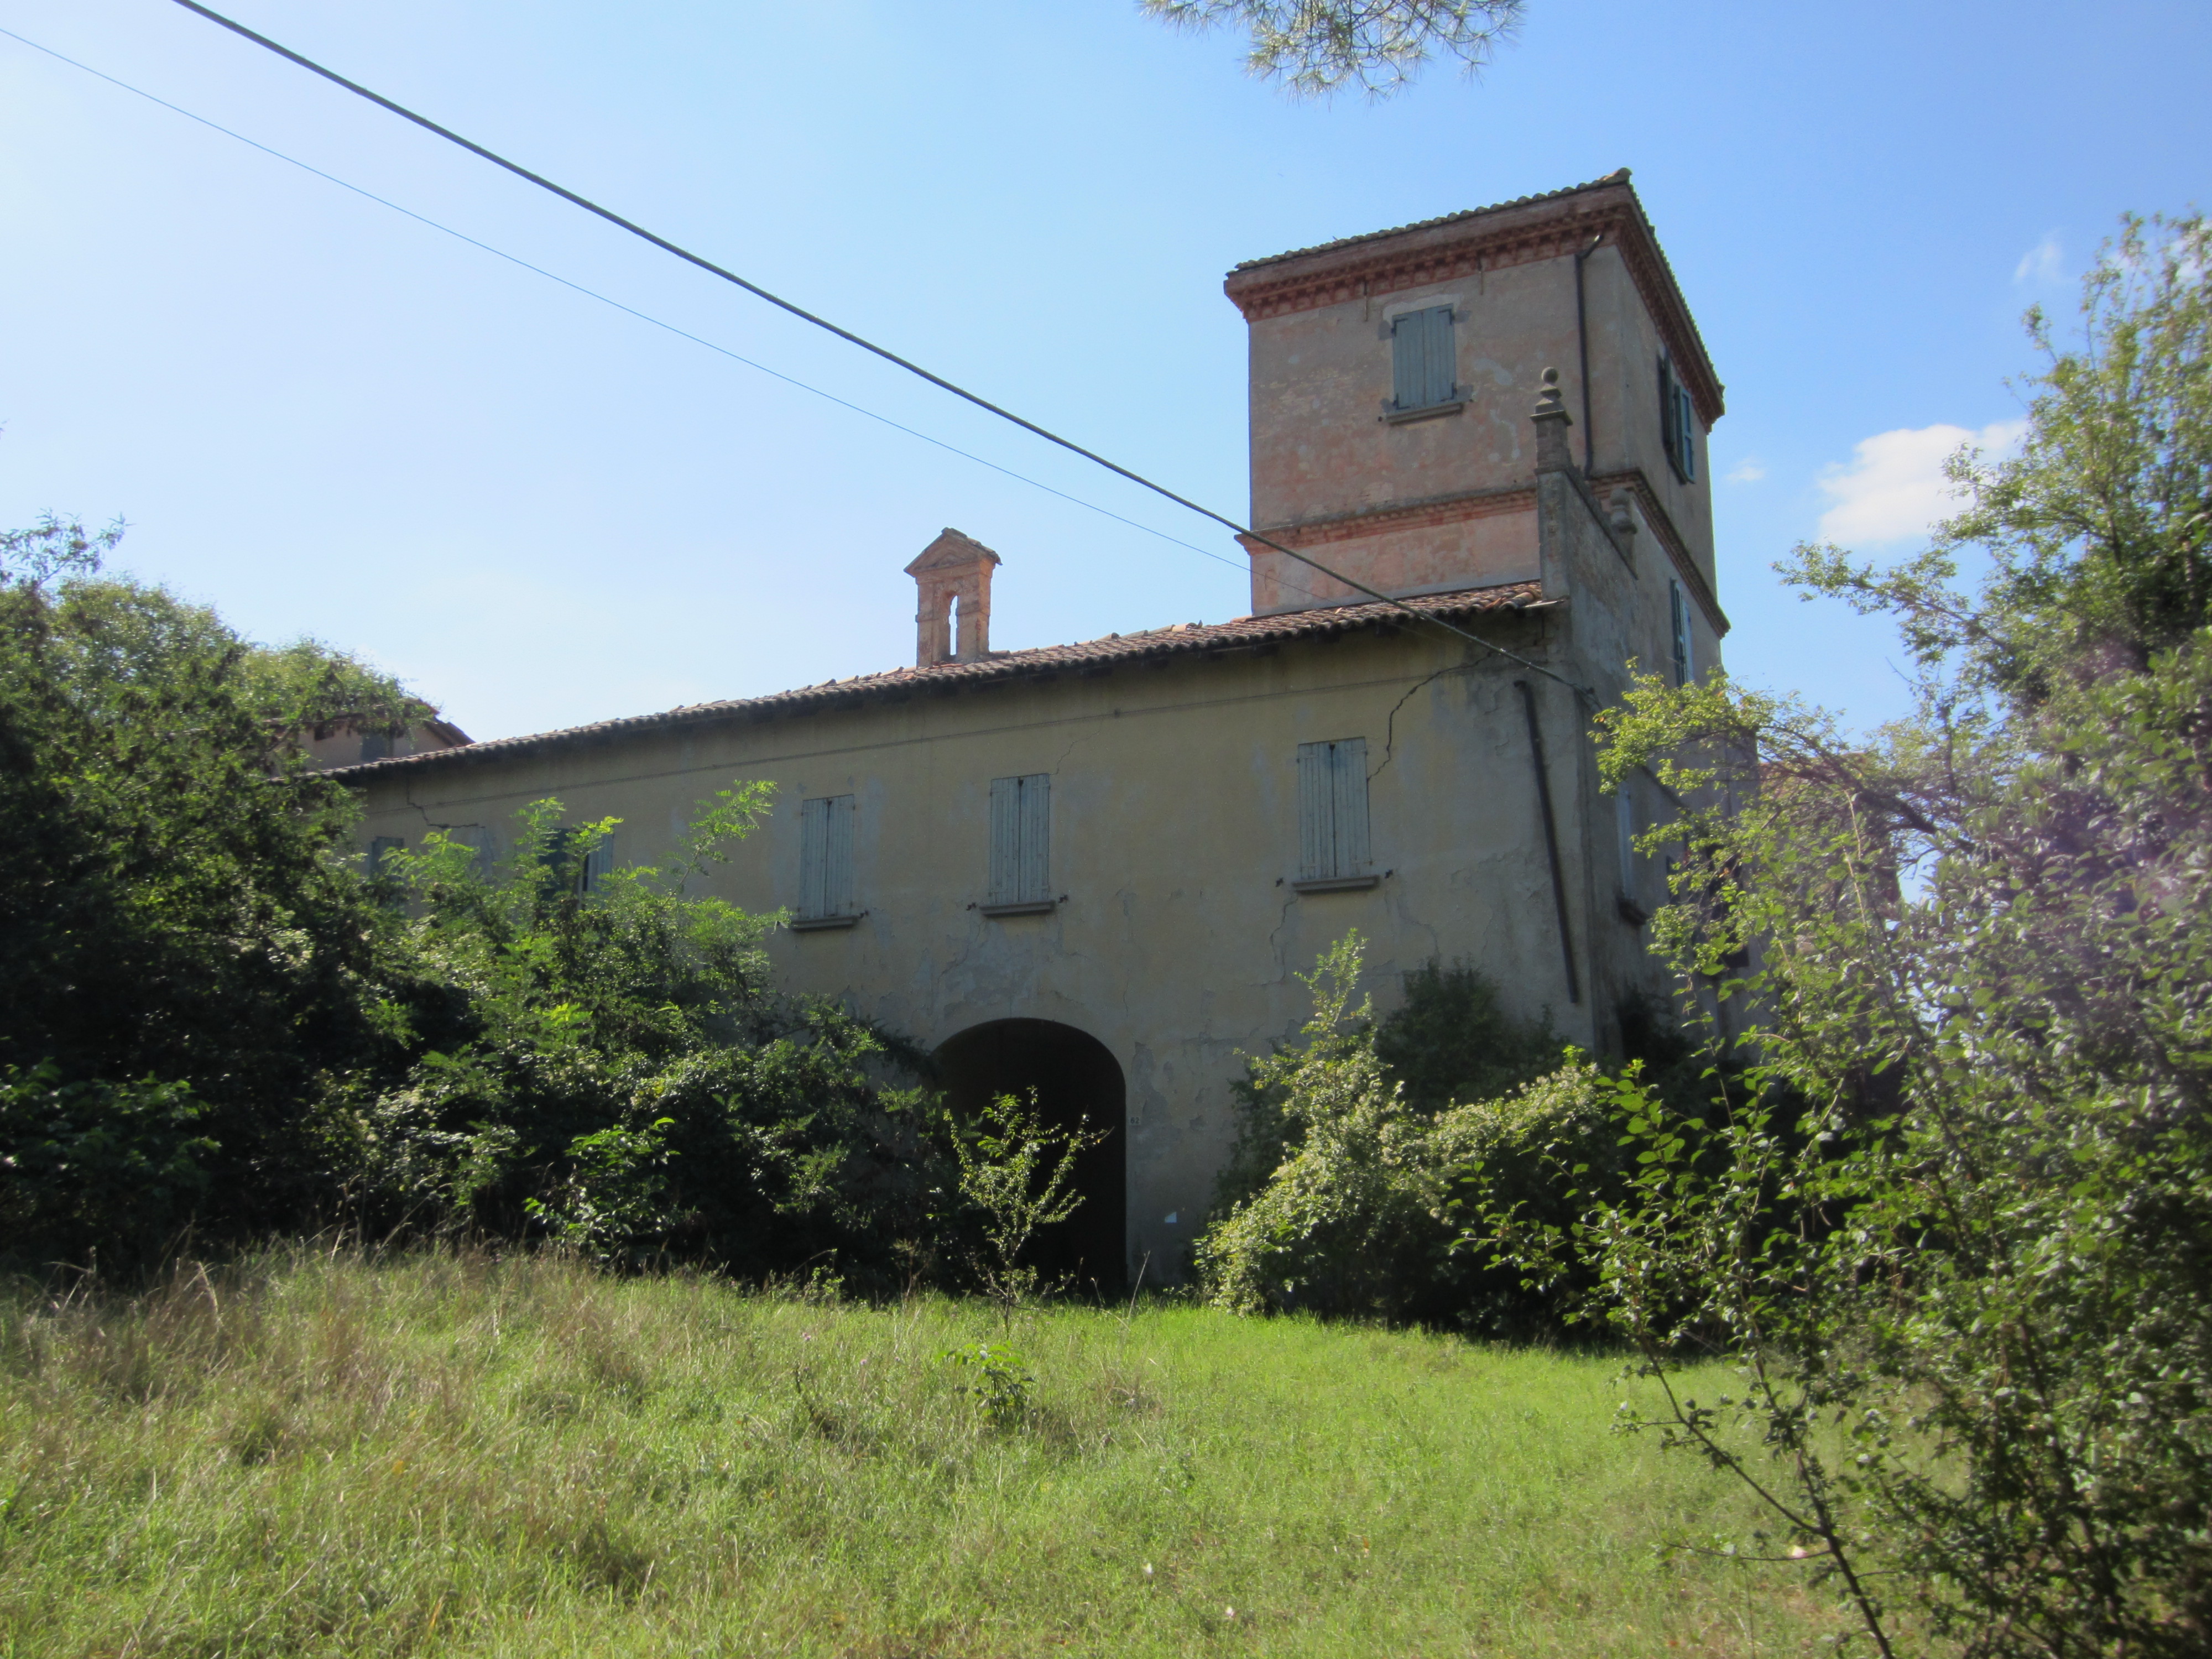 Palazzo Guidalotti (villa) - Ozzano dell'Emilia (BO) 